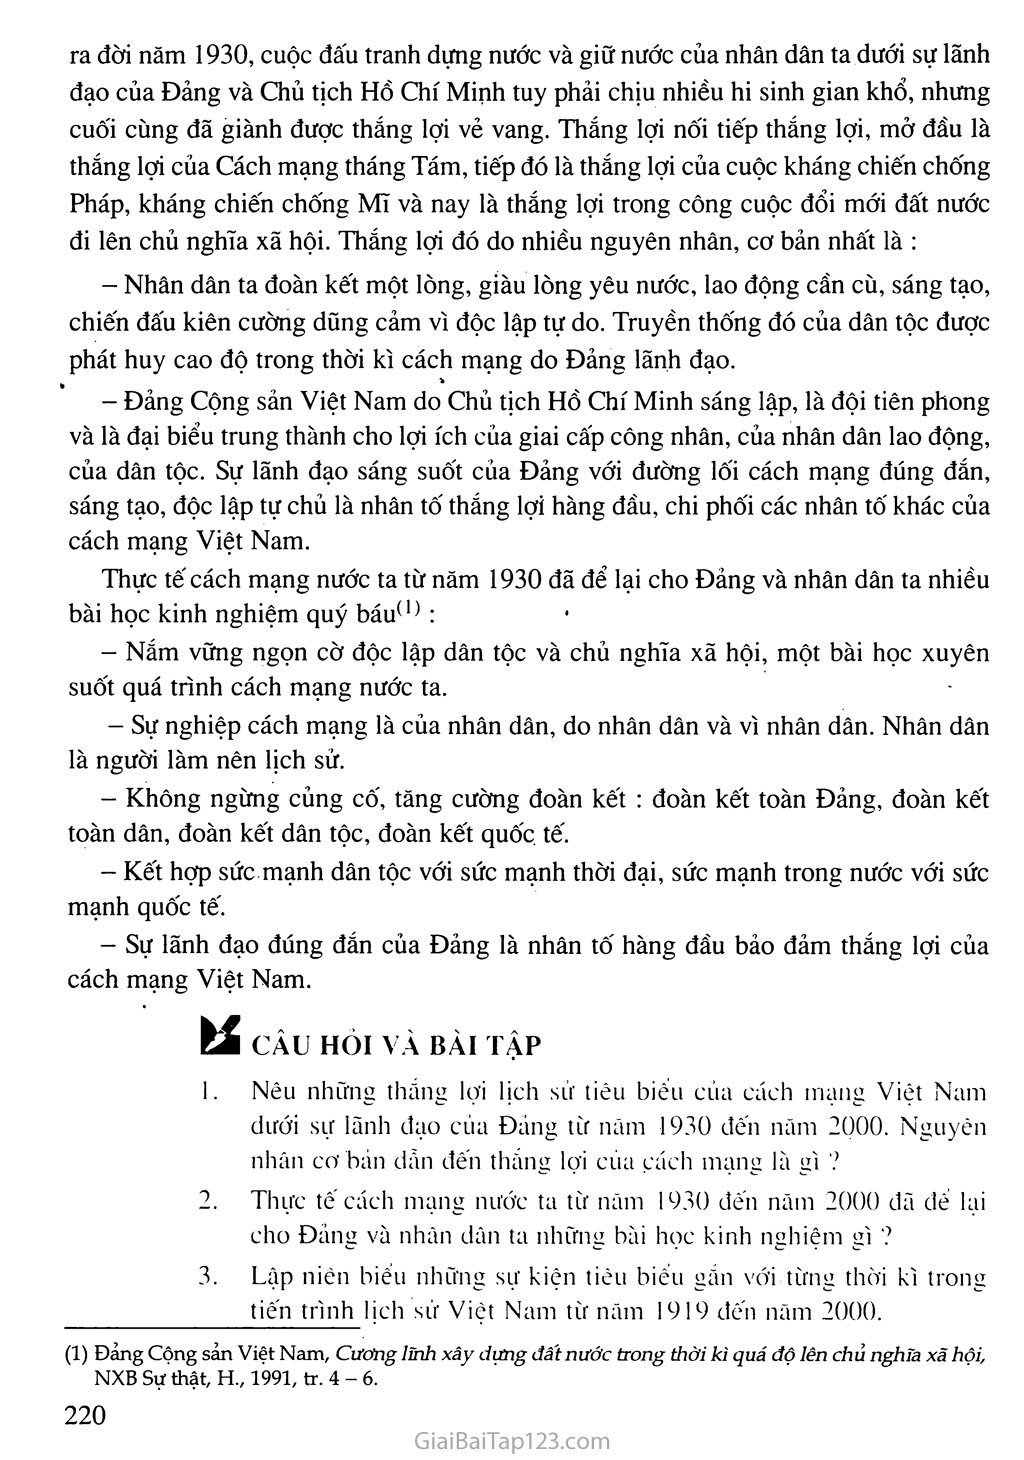 Bài 27. Tổng kết lịch sử Việt Nam từ năm 1919 đến năm 2000 trang 5